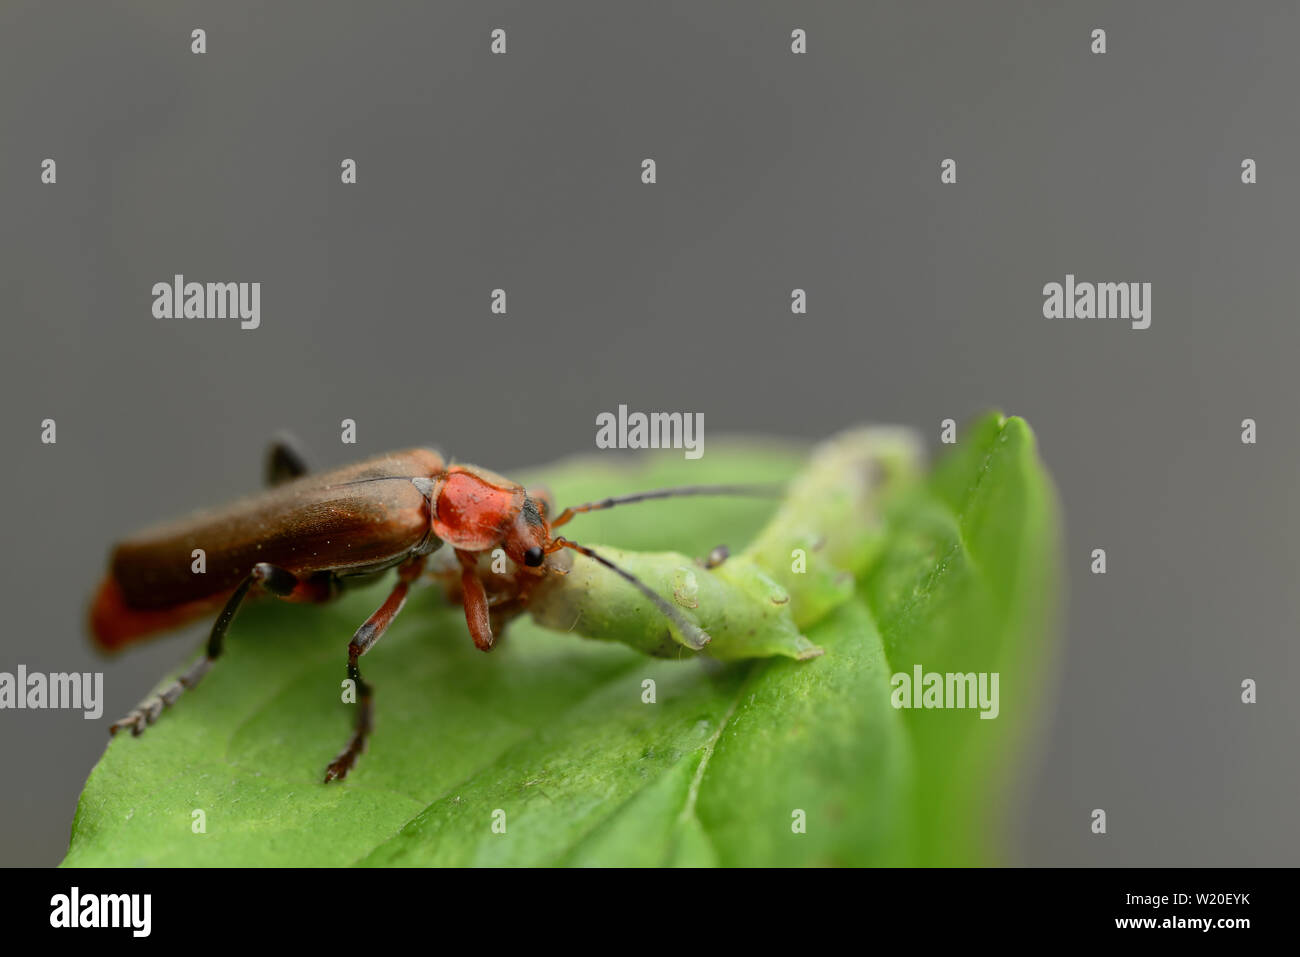 Closeup of a brown beetle eating a green caterpillar Stock Photo